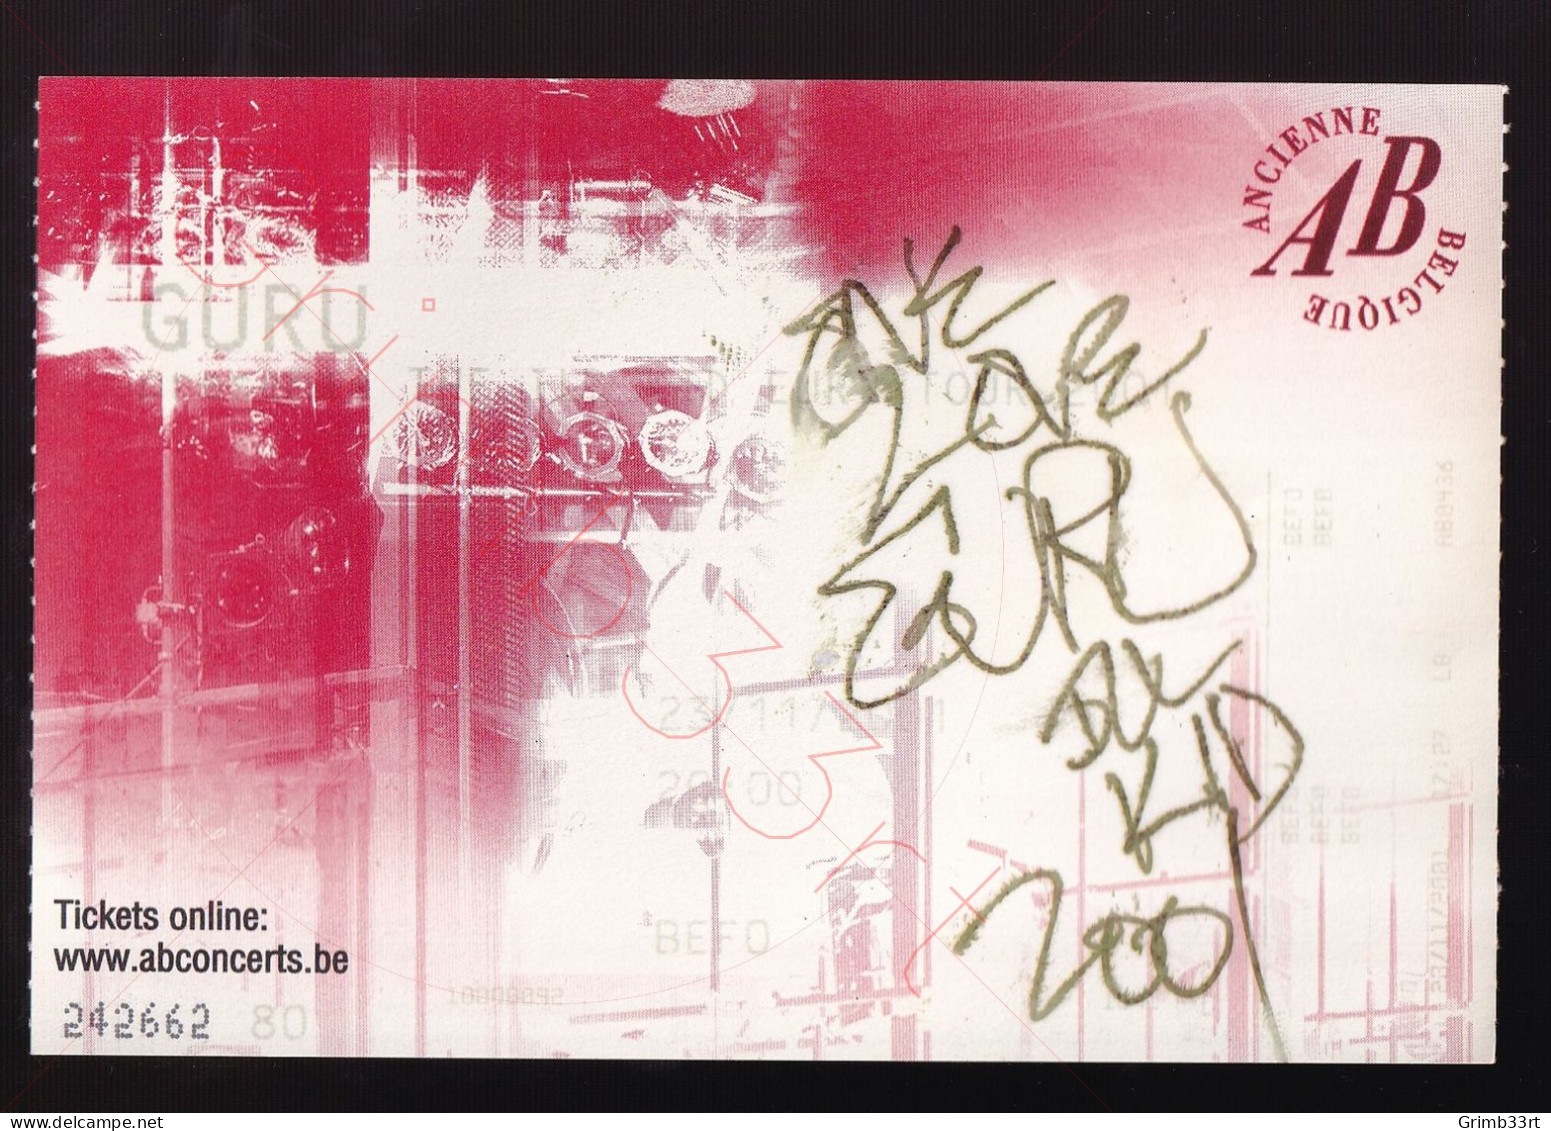 Guru (GESIGNEERD!) - The Ill Kid Tour - 23 November 2001 - Ancienne Belgique (BE) - Concert Ticket - Konzertkarten